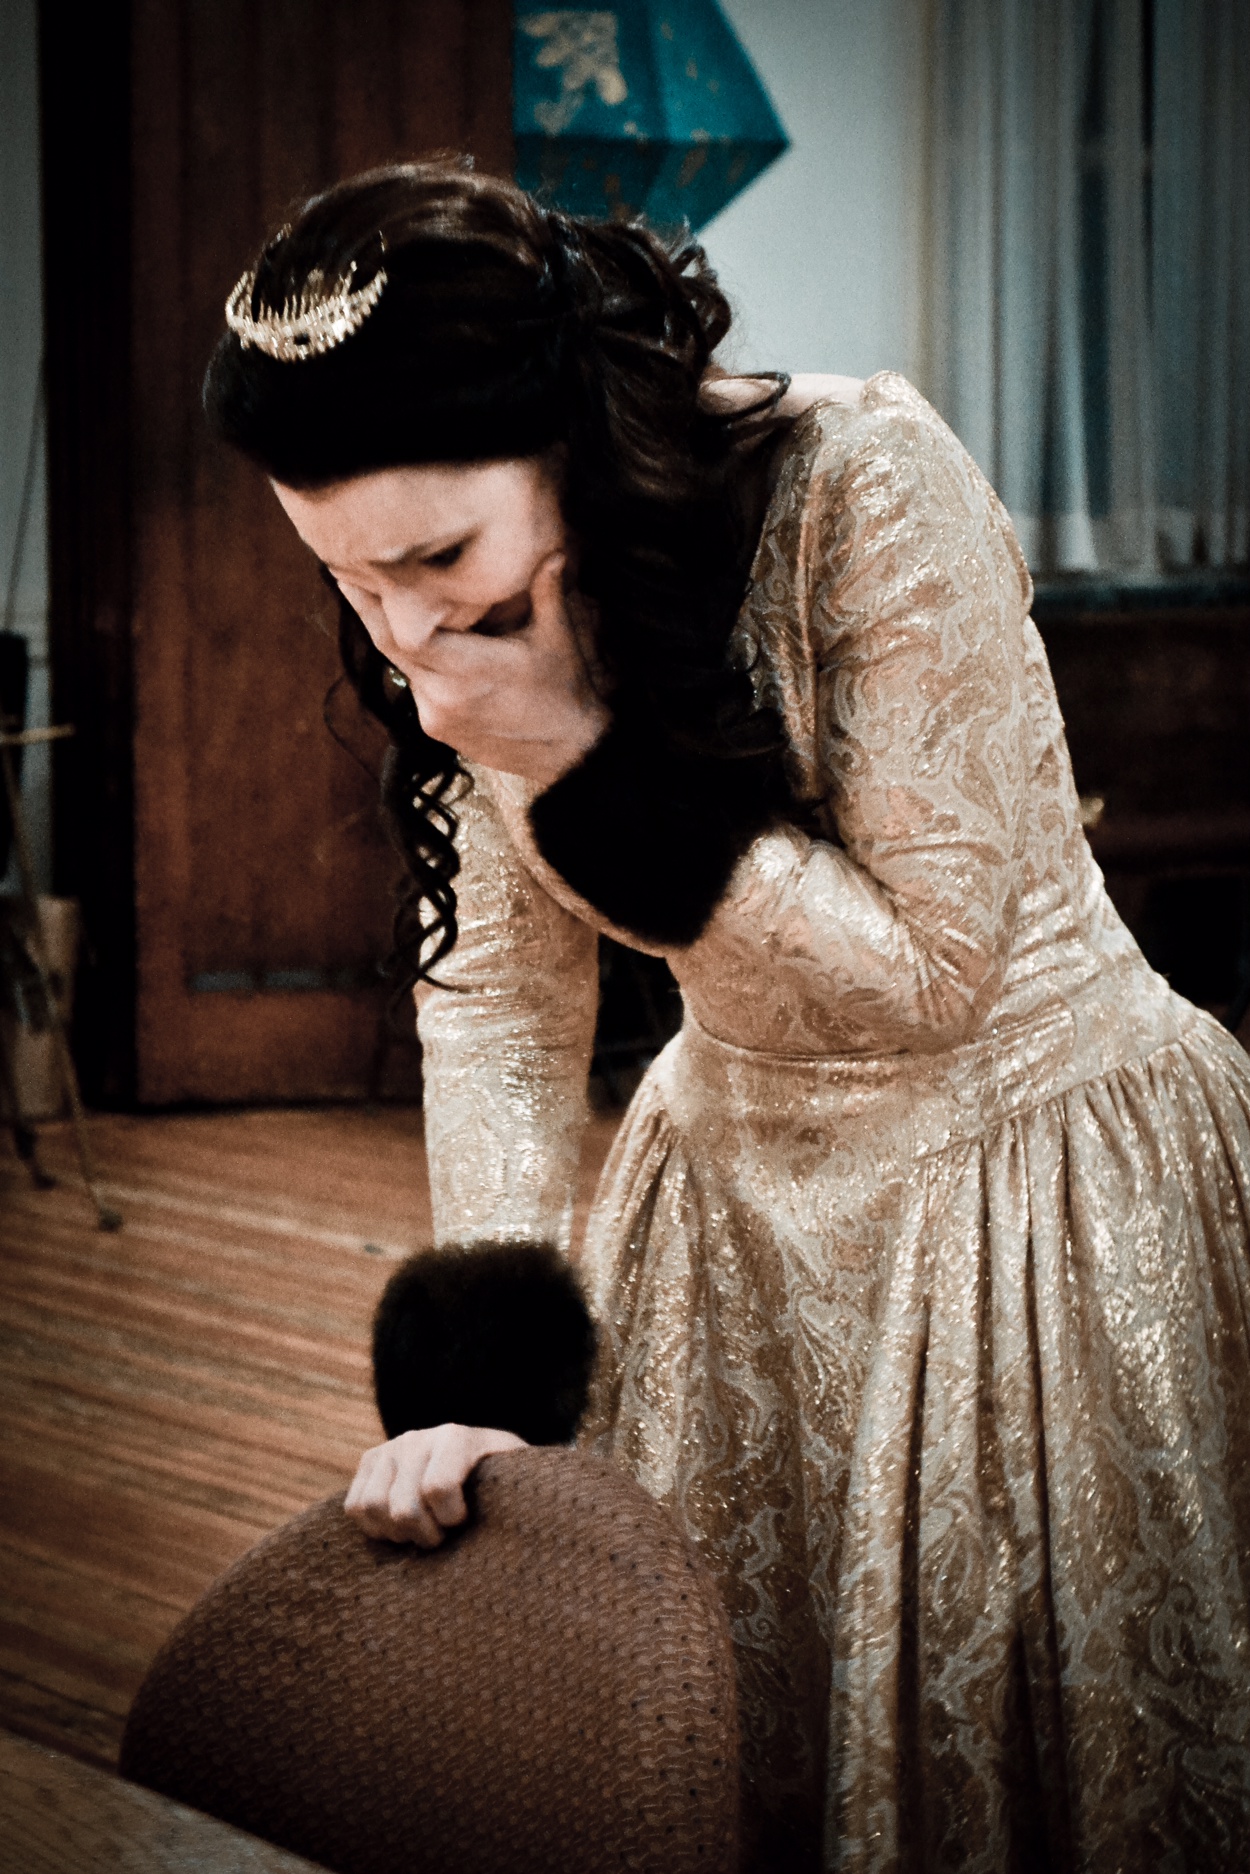 Sophie Vanier as Elizabeth Woodville (from Shakespeare's Richard III) in Bastard Blood, NYC